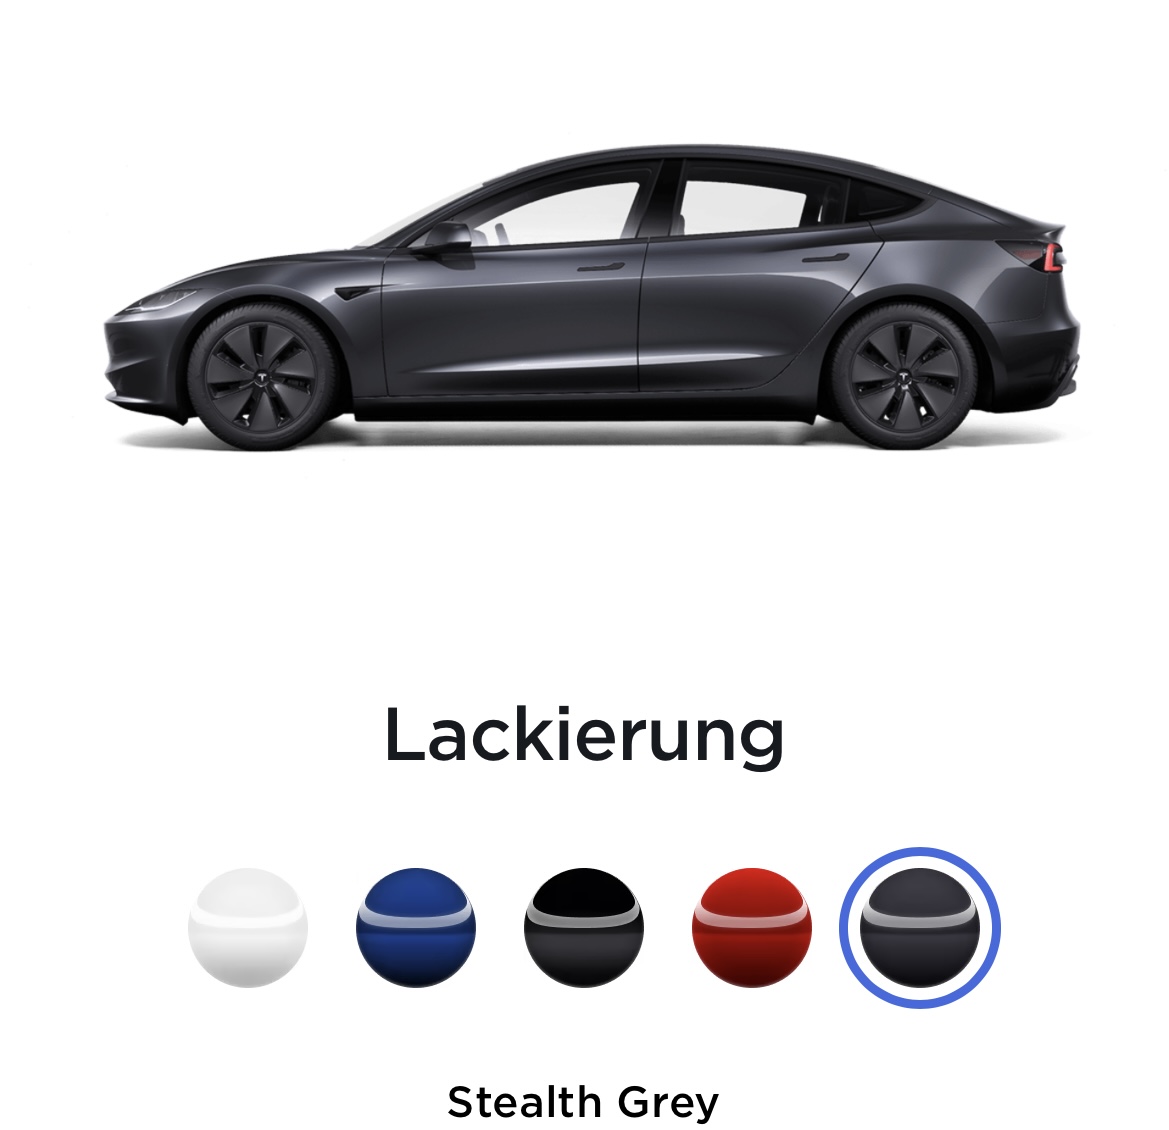 nextmove - Facelift vom Tesla Model 3: mehr als nur ein paar Veränderungen